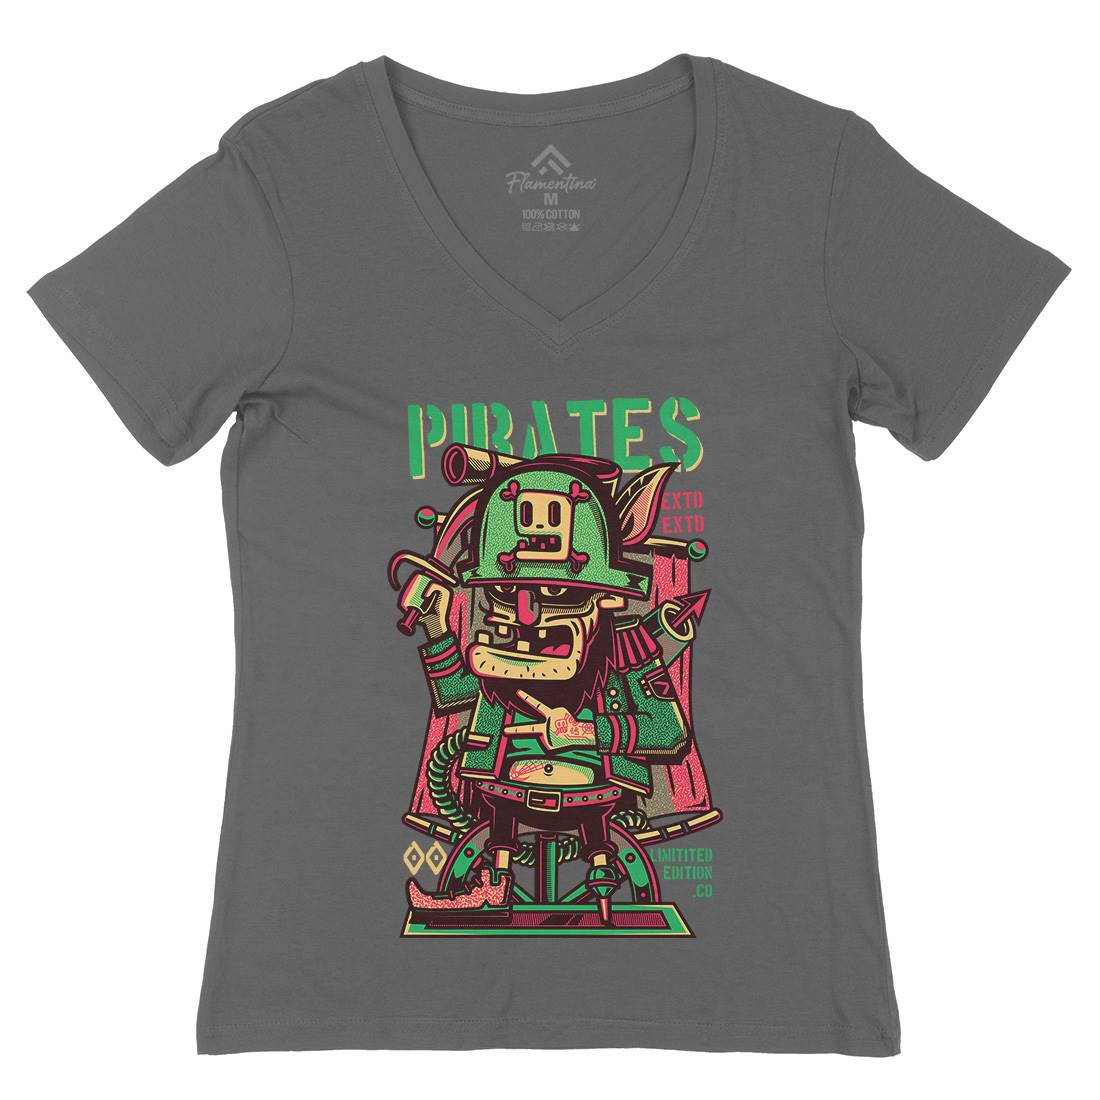 Pirates Womens Organic V-Neck T-Shirt Navy D678